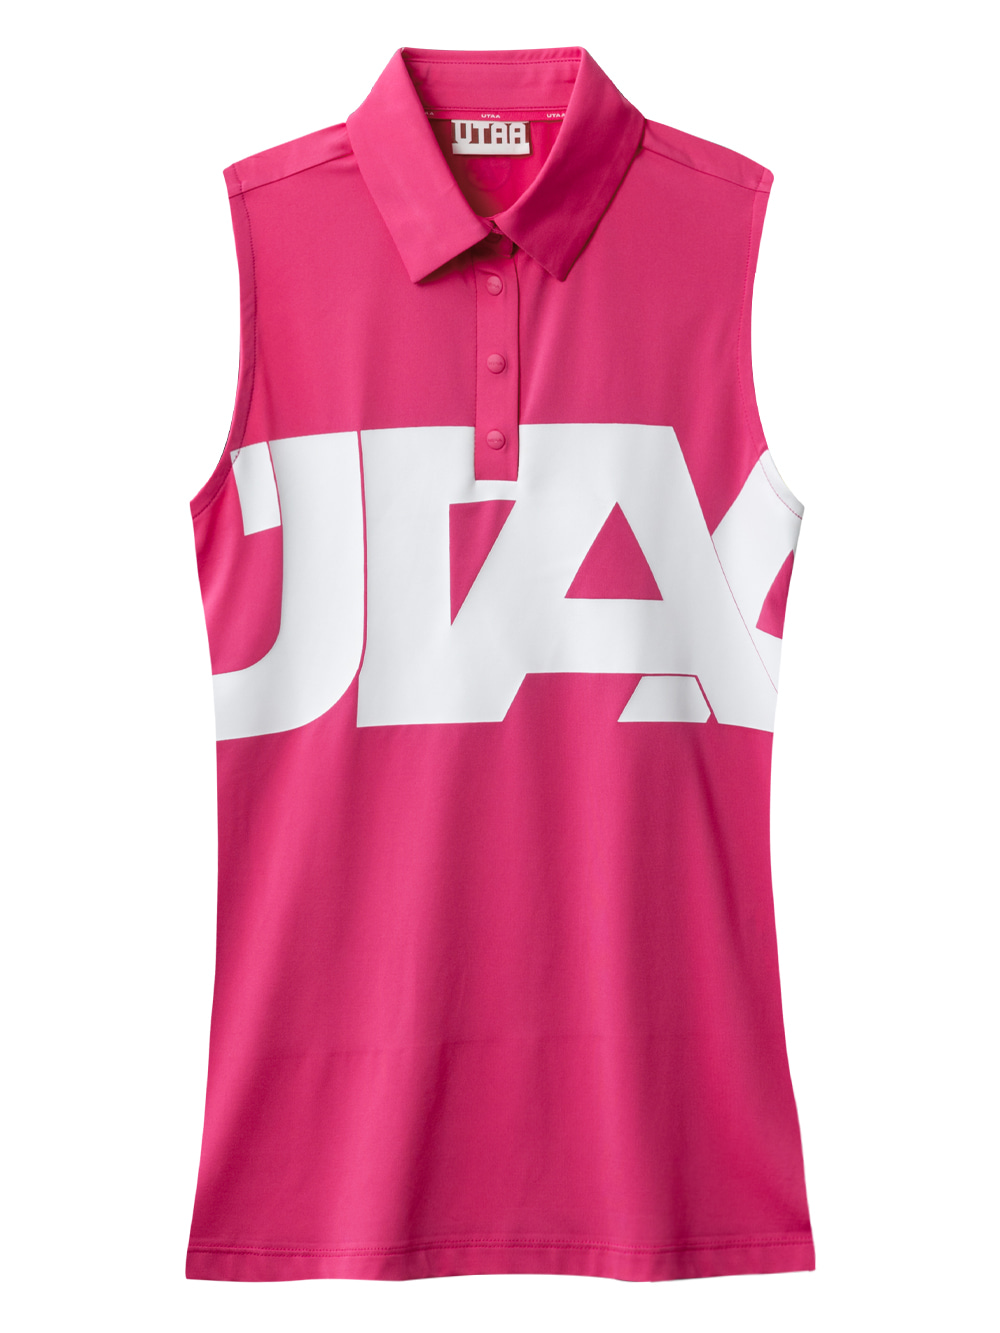 UTAA Midday Logo Sleeveless : Pink (UB2TVF111PK)